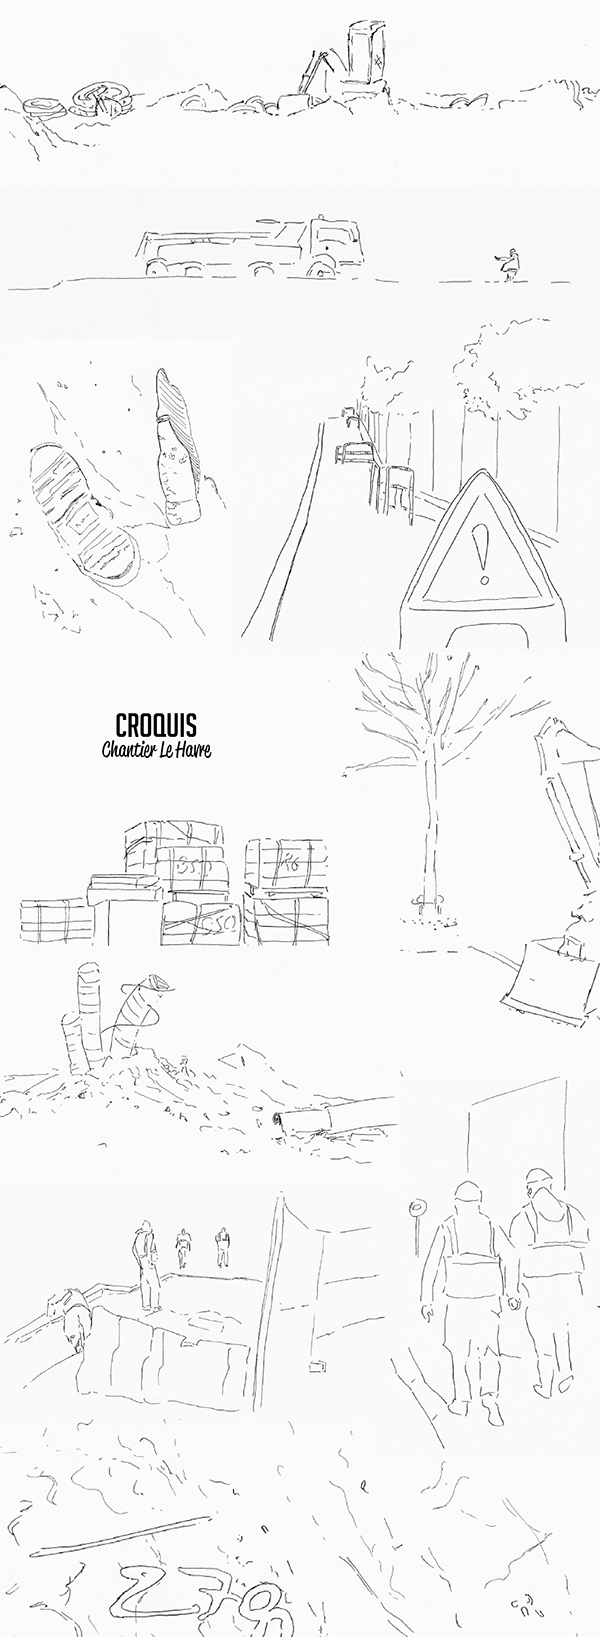 Croquis chantier / Construction site sketch